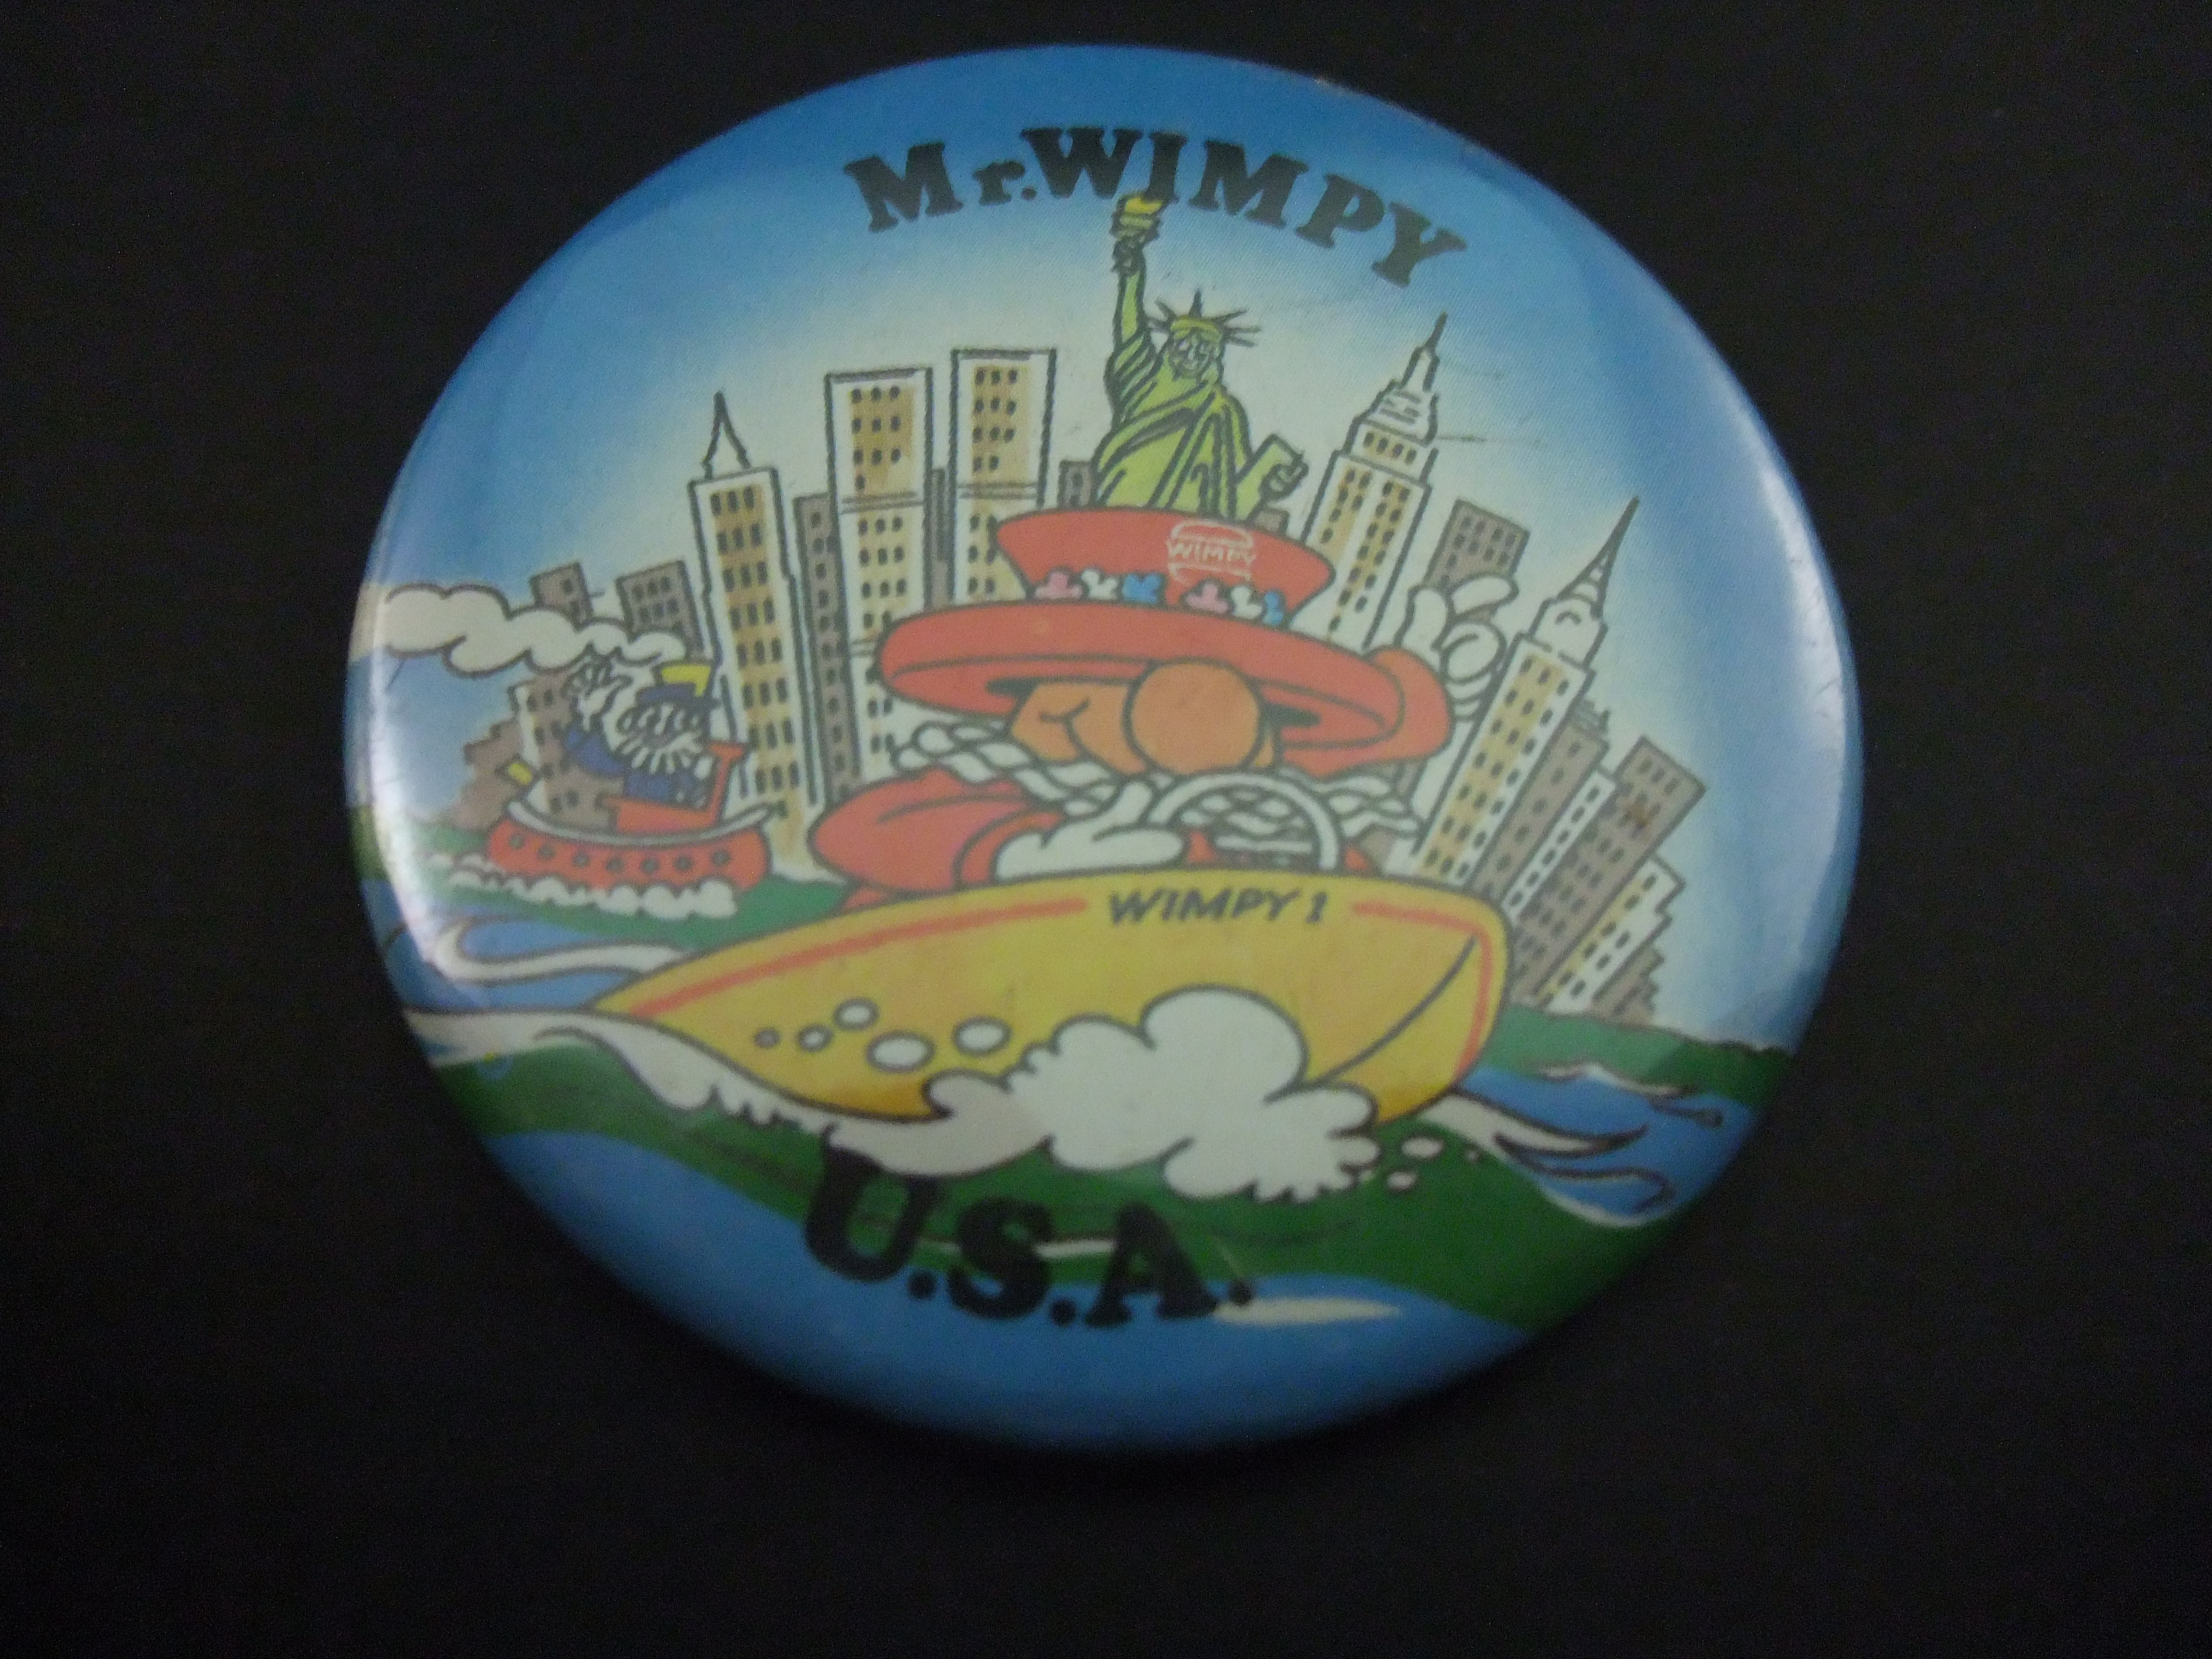 Mr Wimpy Britse fastfoodrestaurant jaren 70 USA